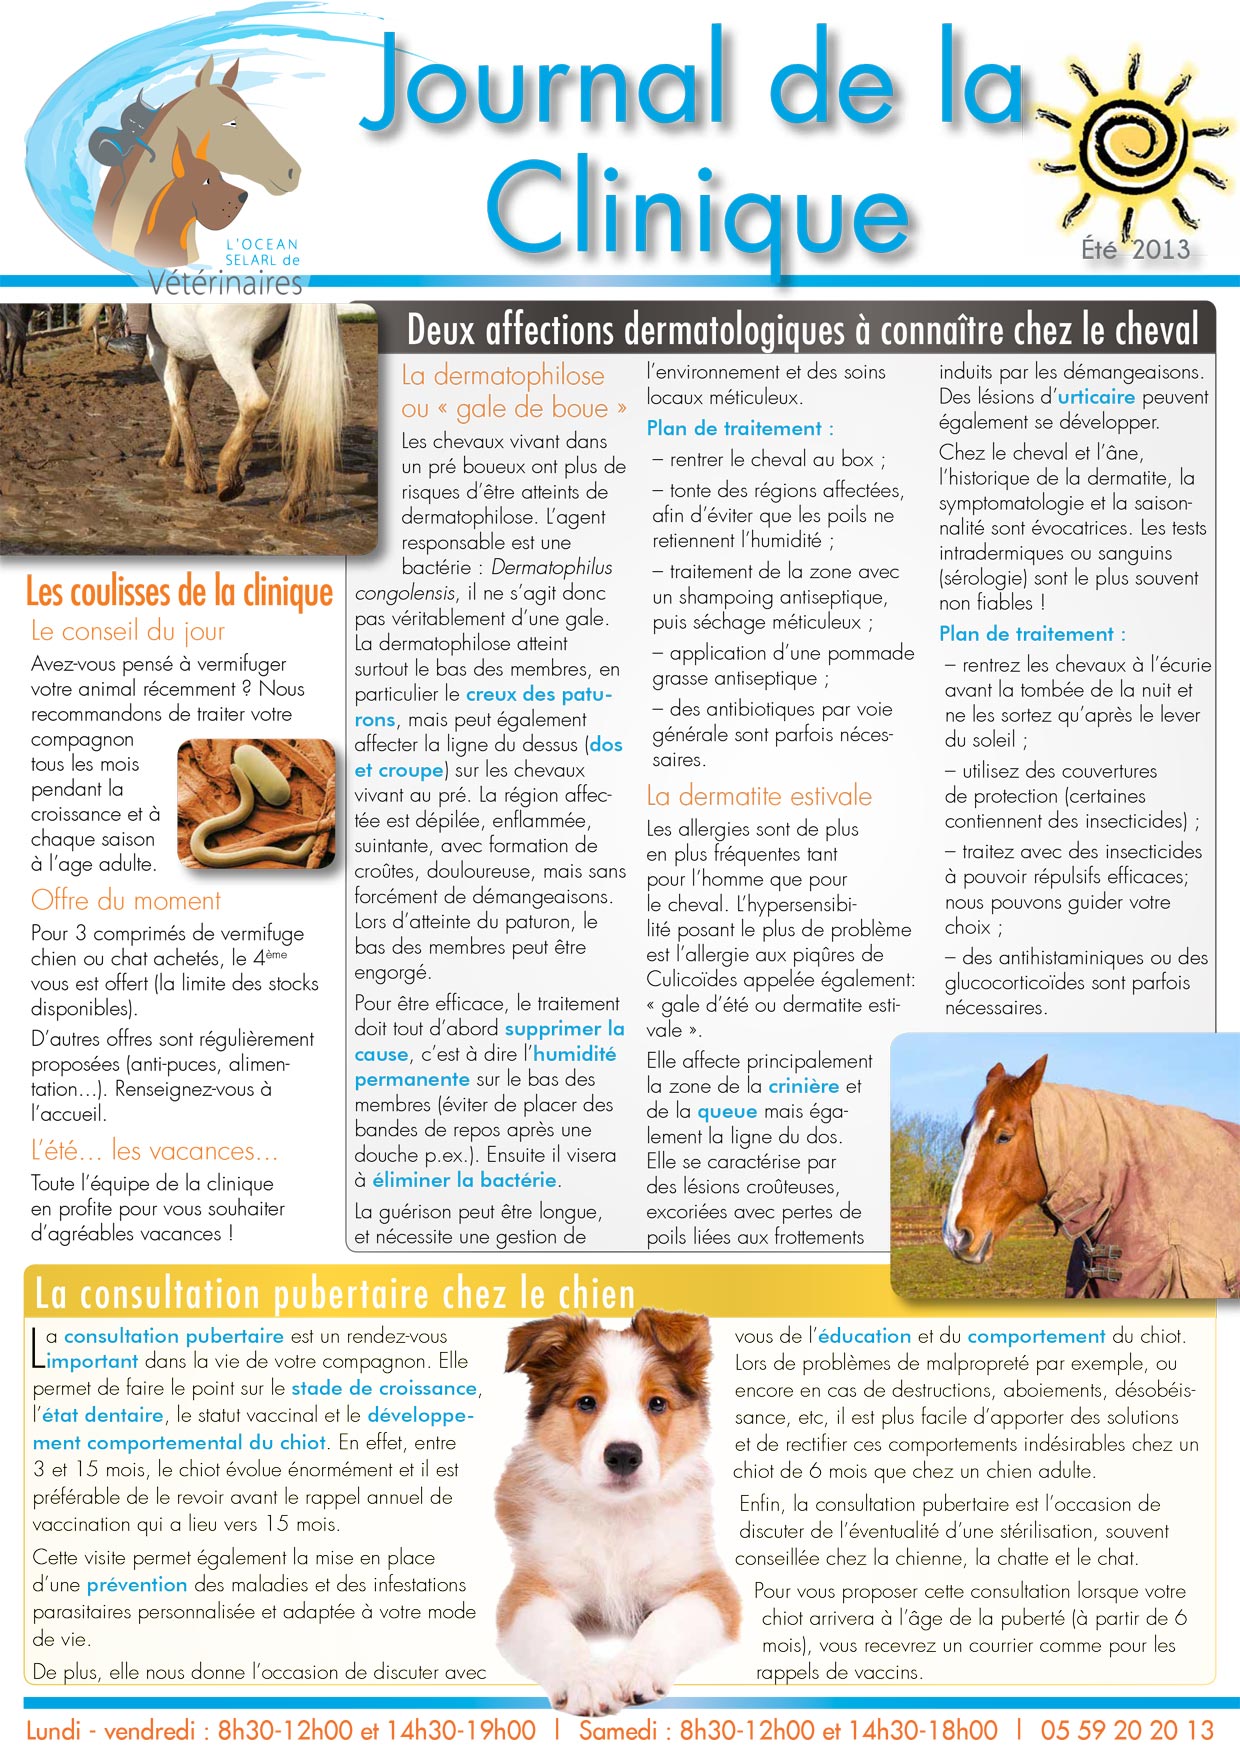 Le Journal de la Clinique - Eté 2013 page 1